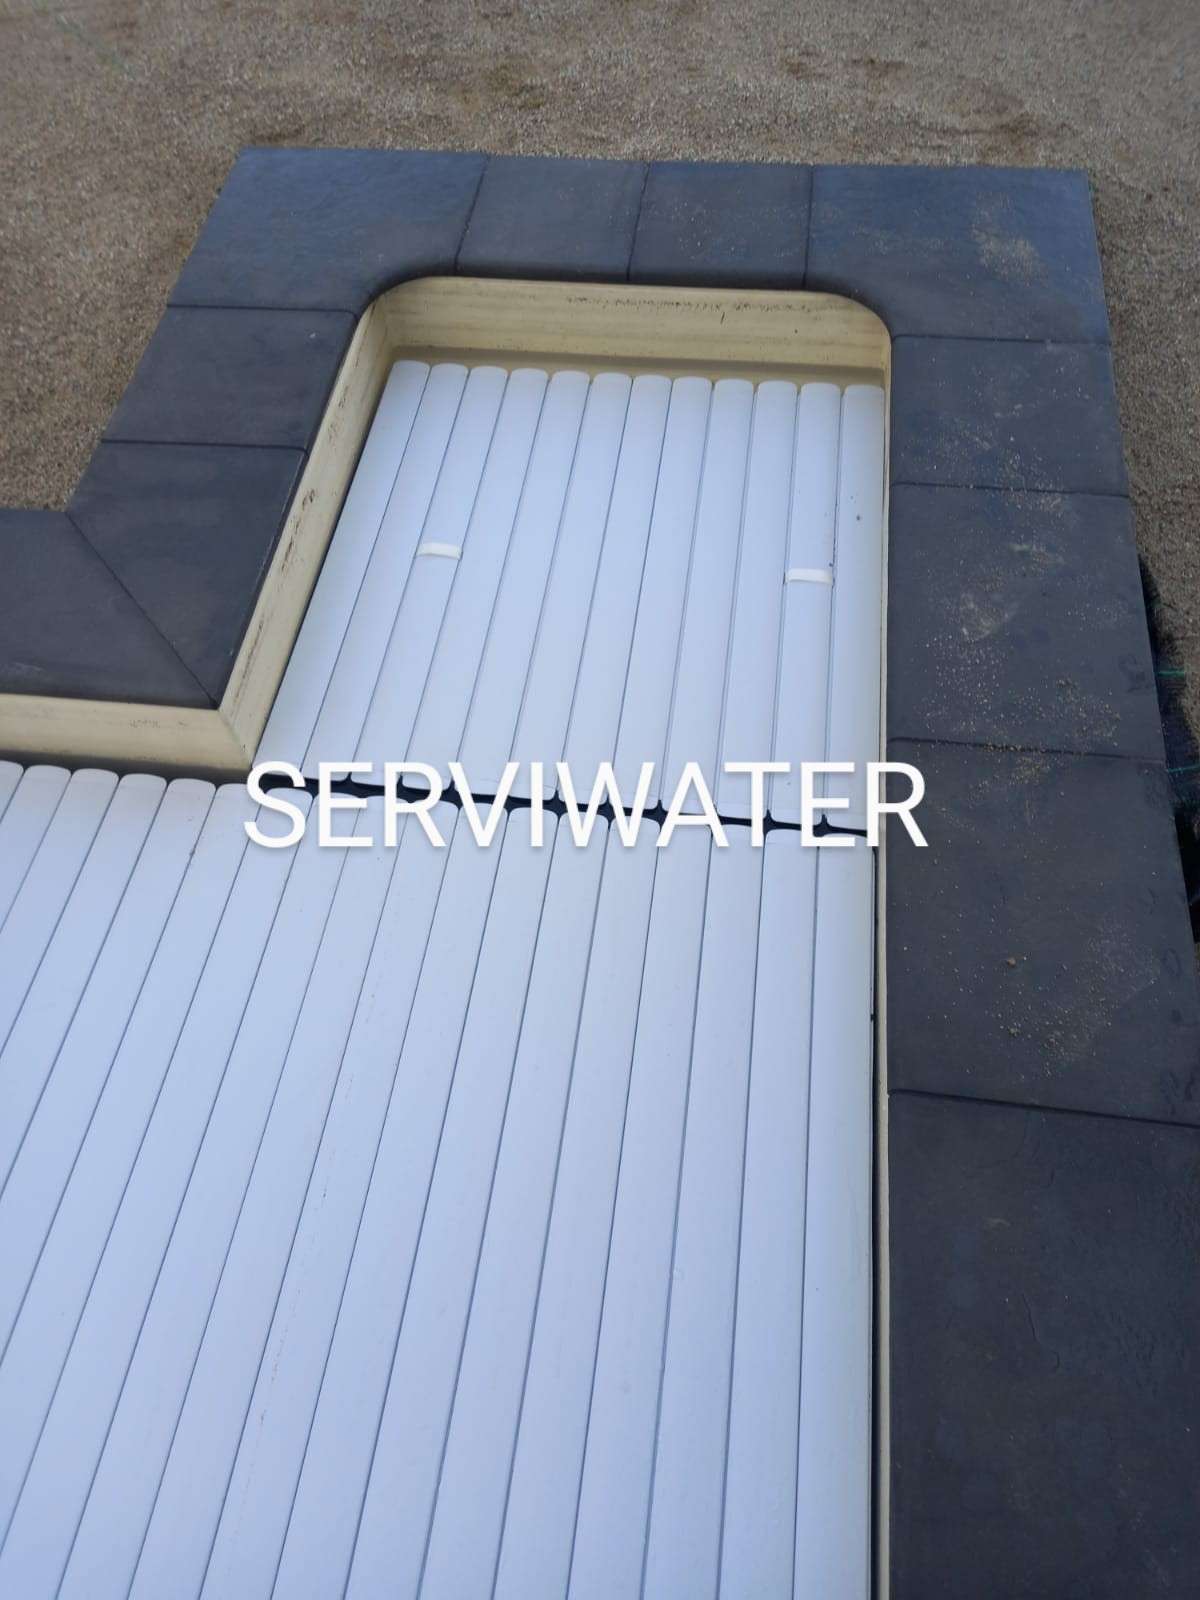 Serviwater - Póvoa de Varzim - Reparação ou Manutenção de Sauna